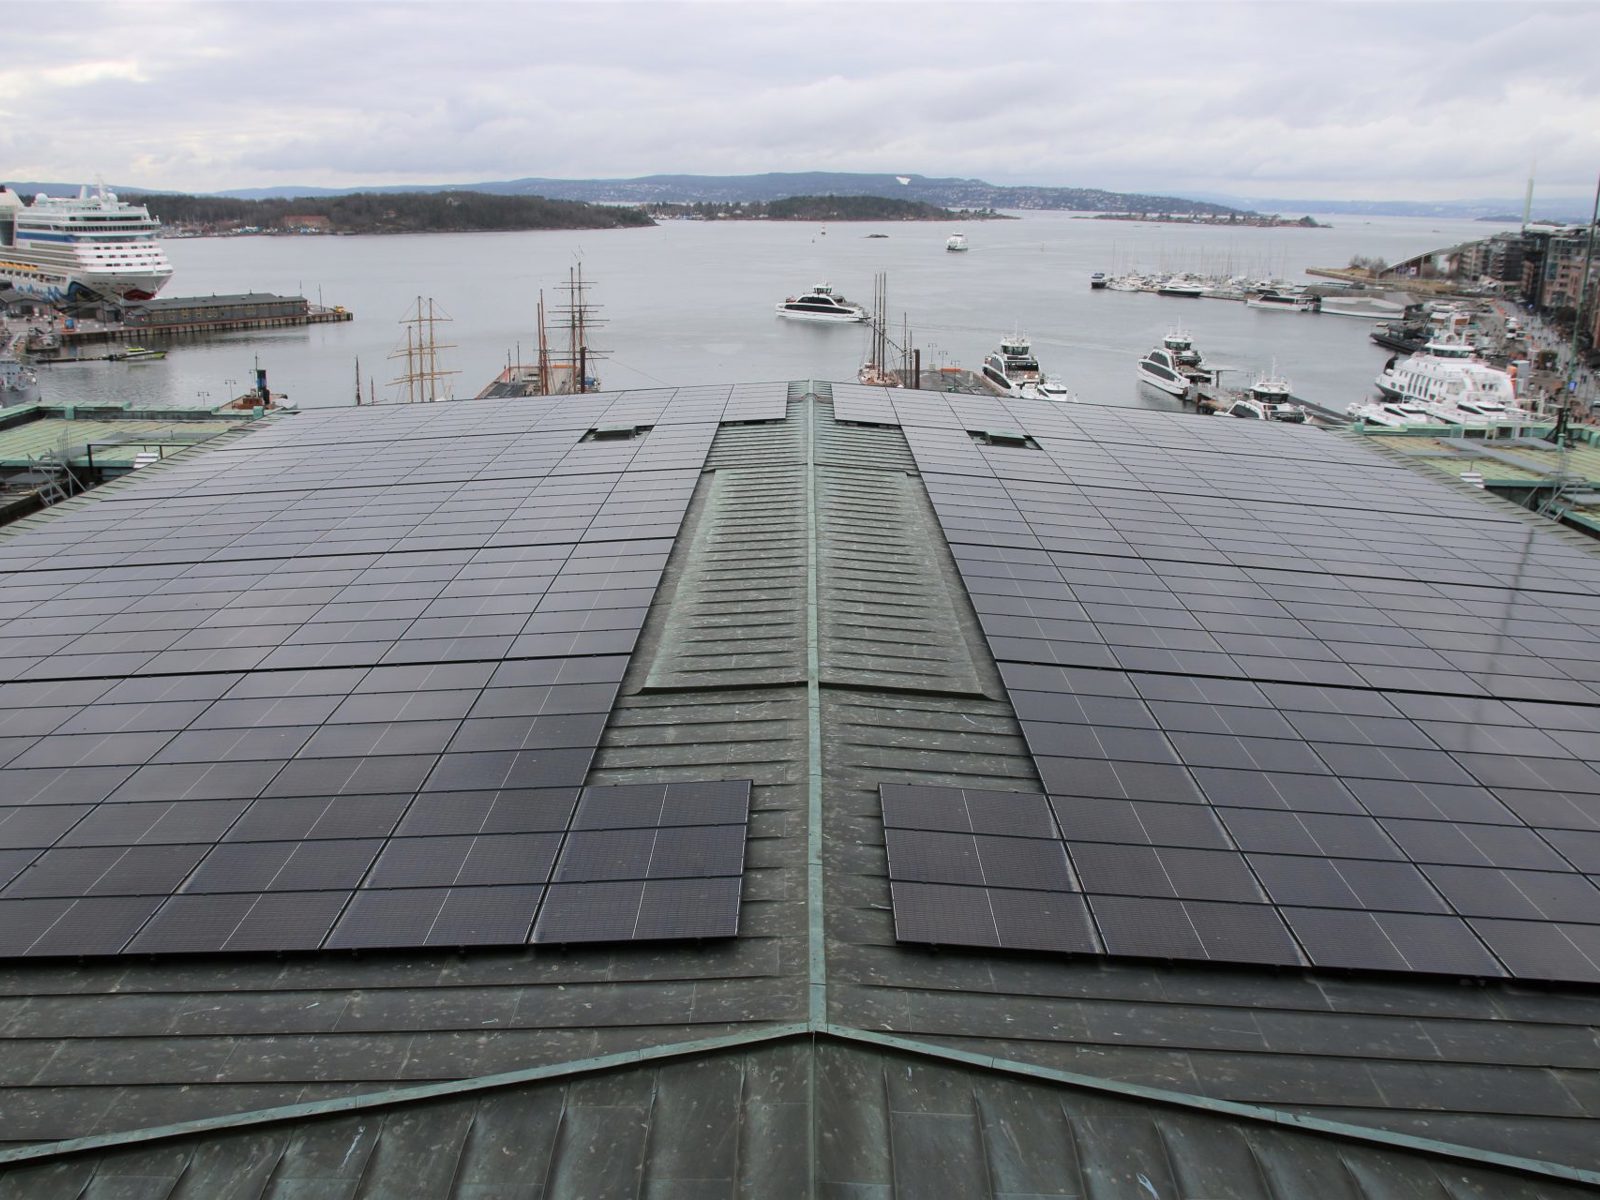 Taket på Oslo rådhus, med solcelleanlegg. Foto.